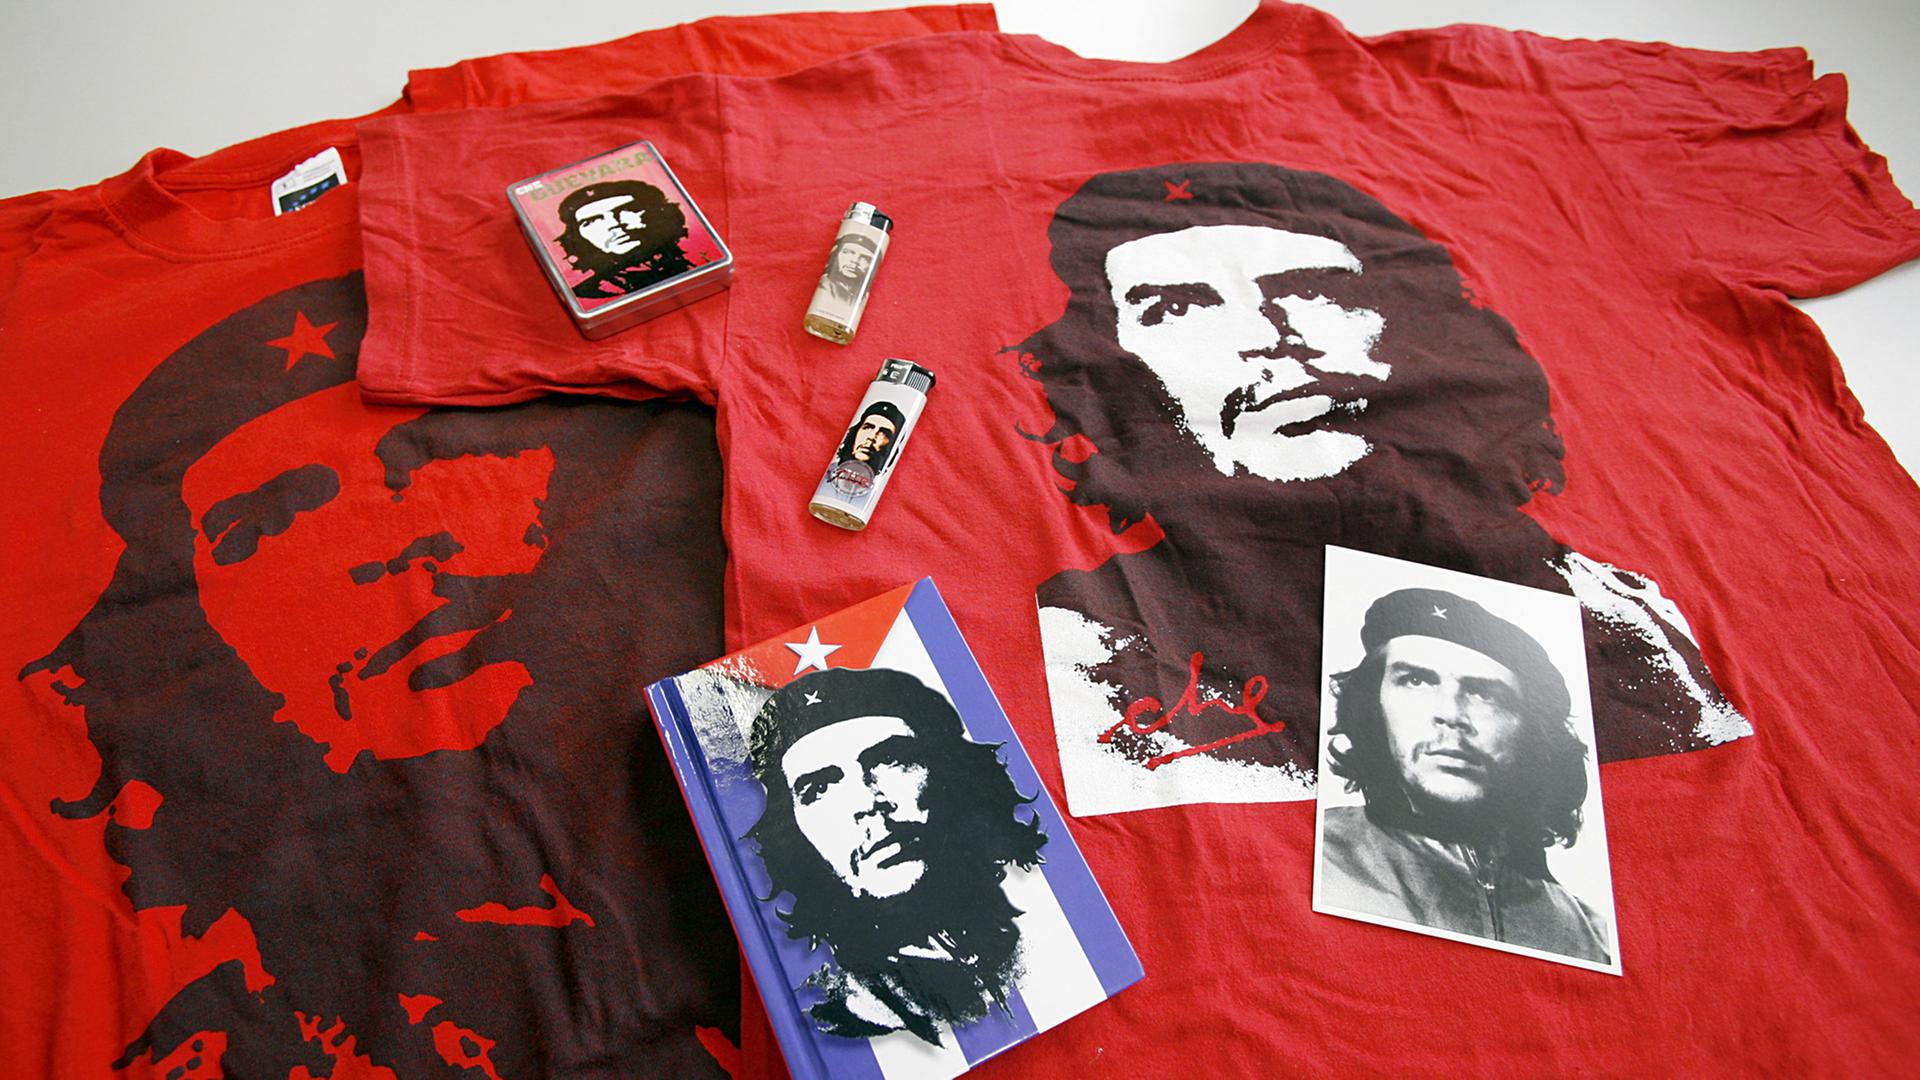 Feuerzeuge, Notizbücher, Postkarten und zwei rote T-Shirts mit immer dem gleichen Konterfei des südamerikanischen Guerilla-Führer Ernesto "Che" Guevara.